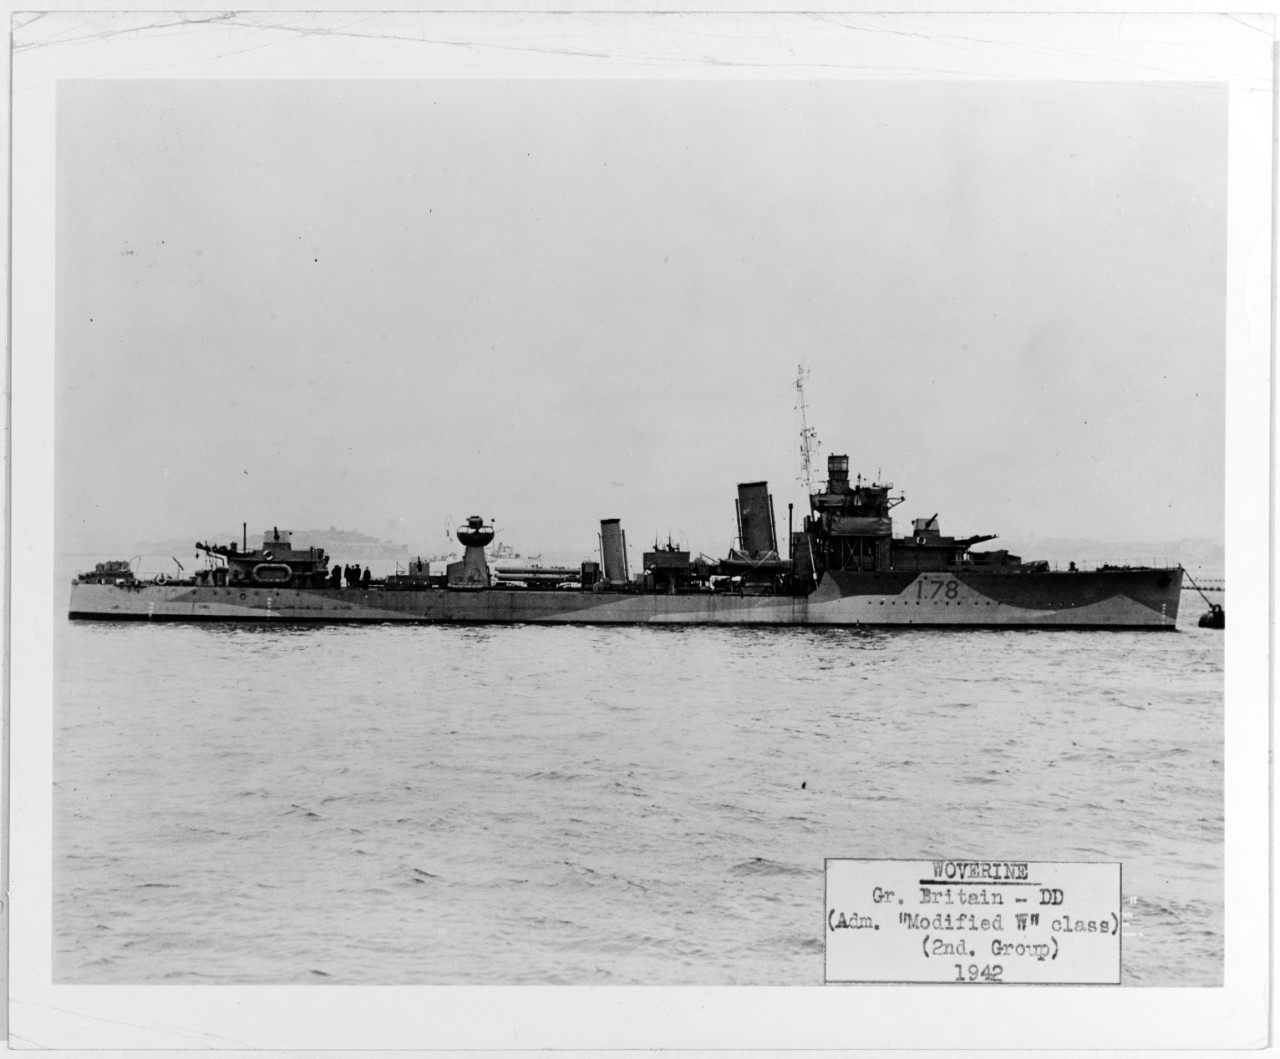 WOLVERINE (British destroyer, 1919-1946)